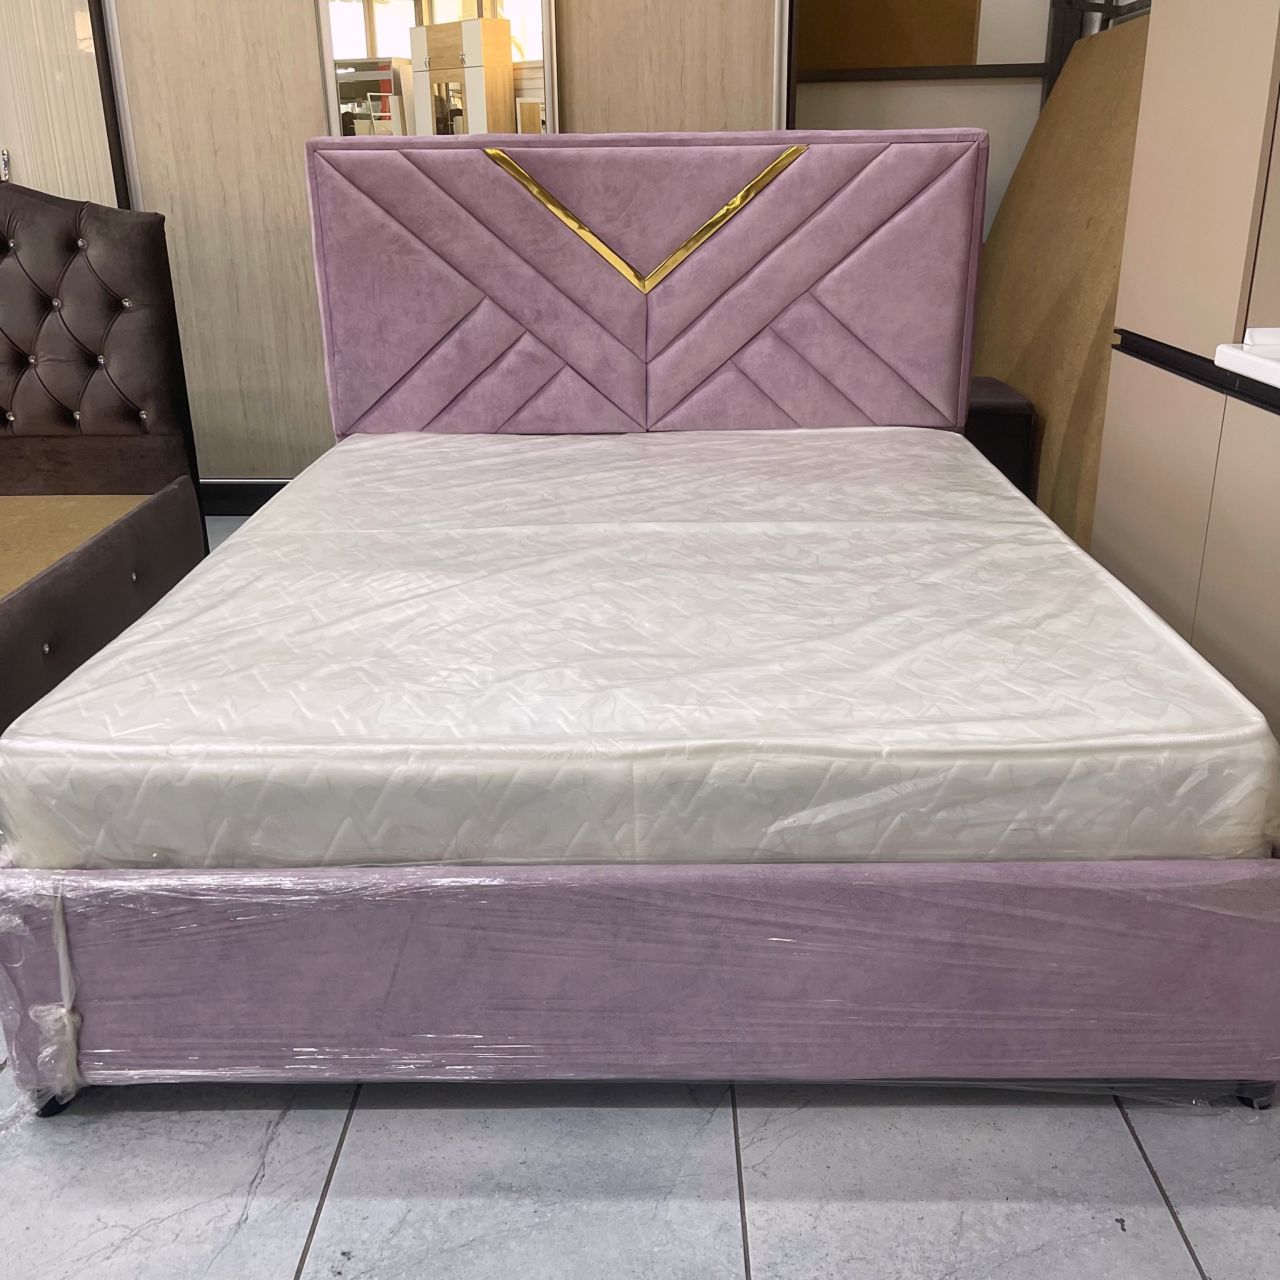 Кровать двуспальная Сеул